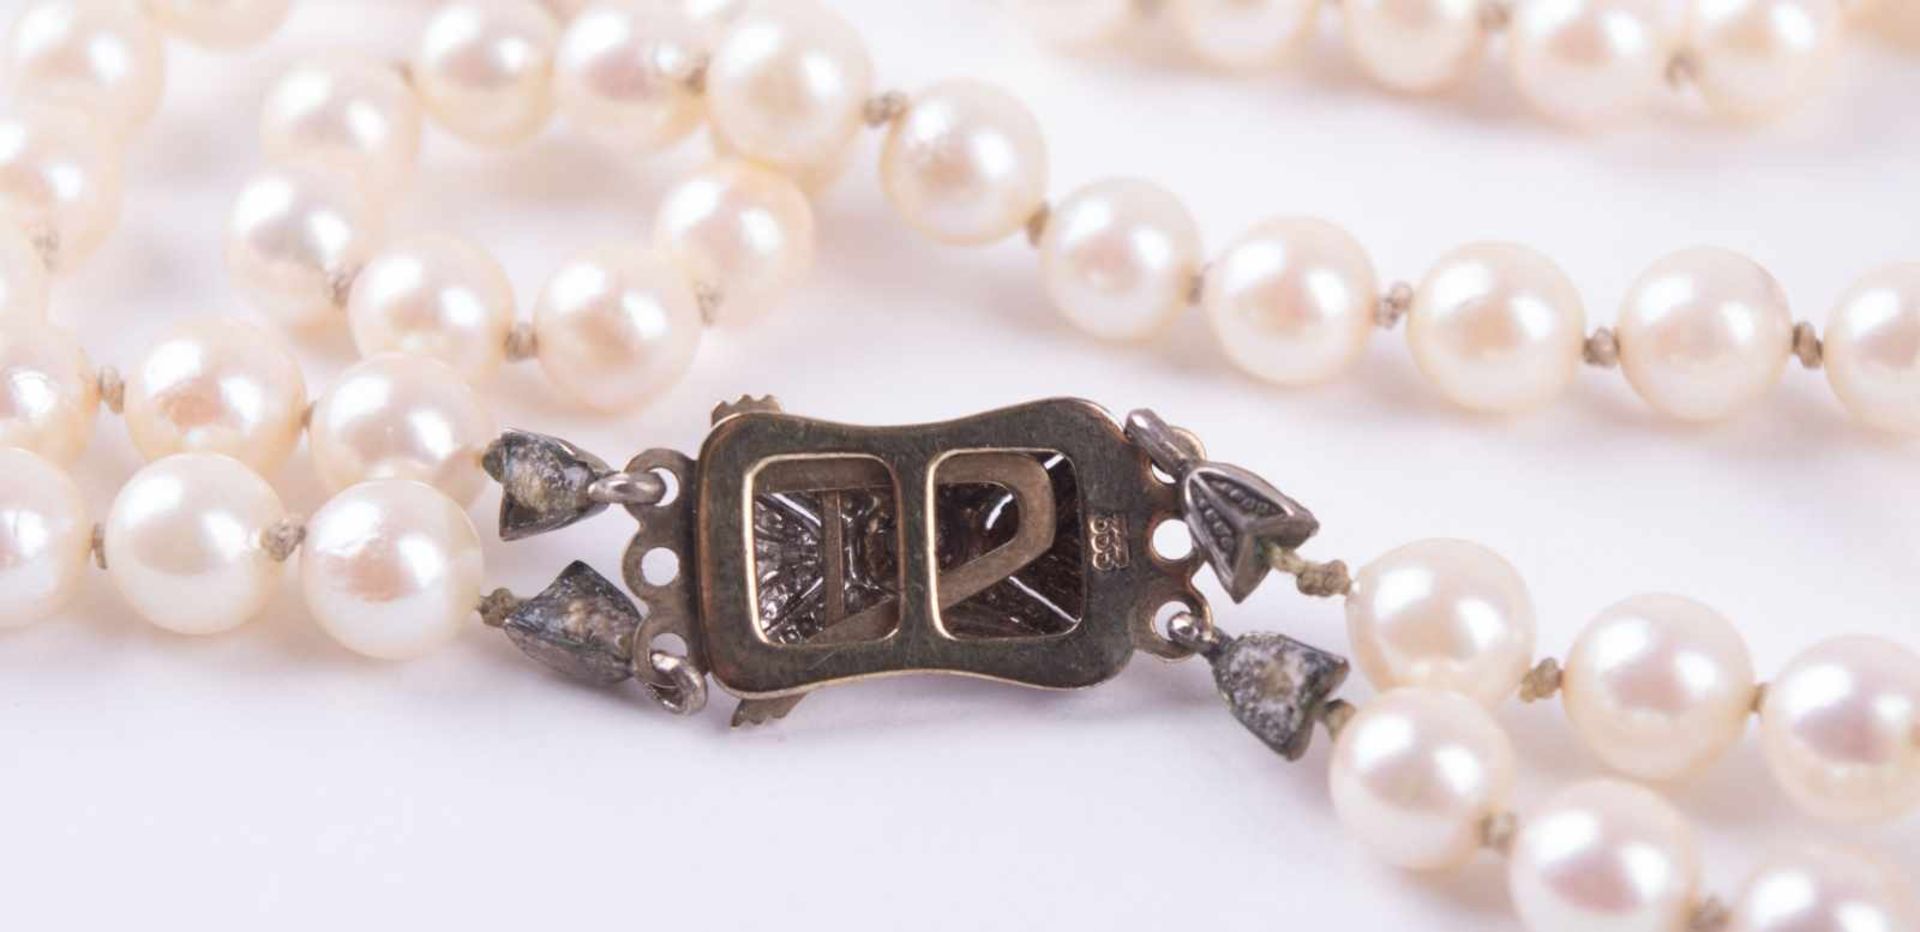 Perlenkette um 1930 Verschluss WG/GG 333/000 mit kleiner Perle besetzt, L: 47 cm Pearl necklace - Image 4 of 4